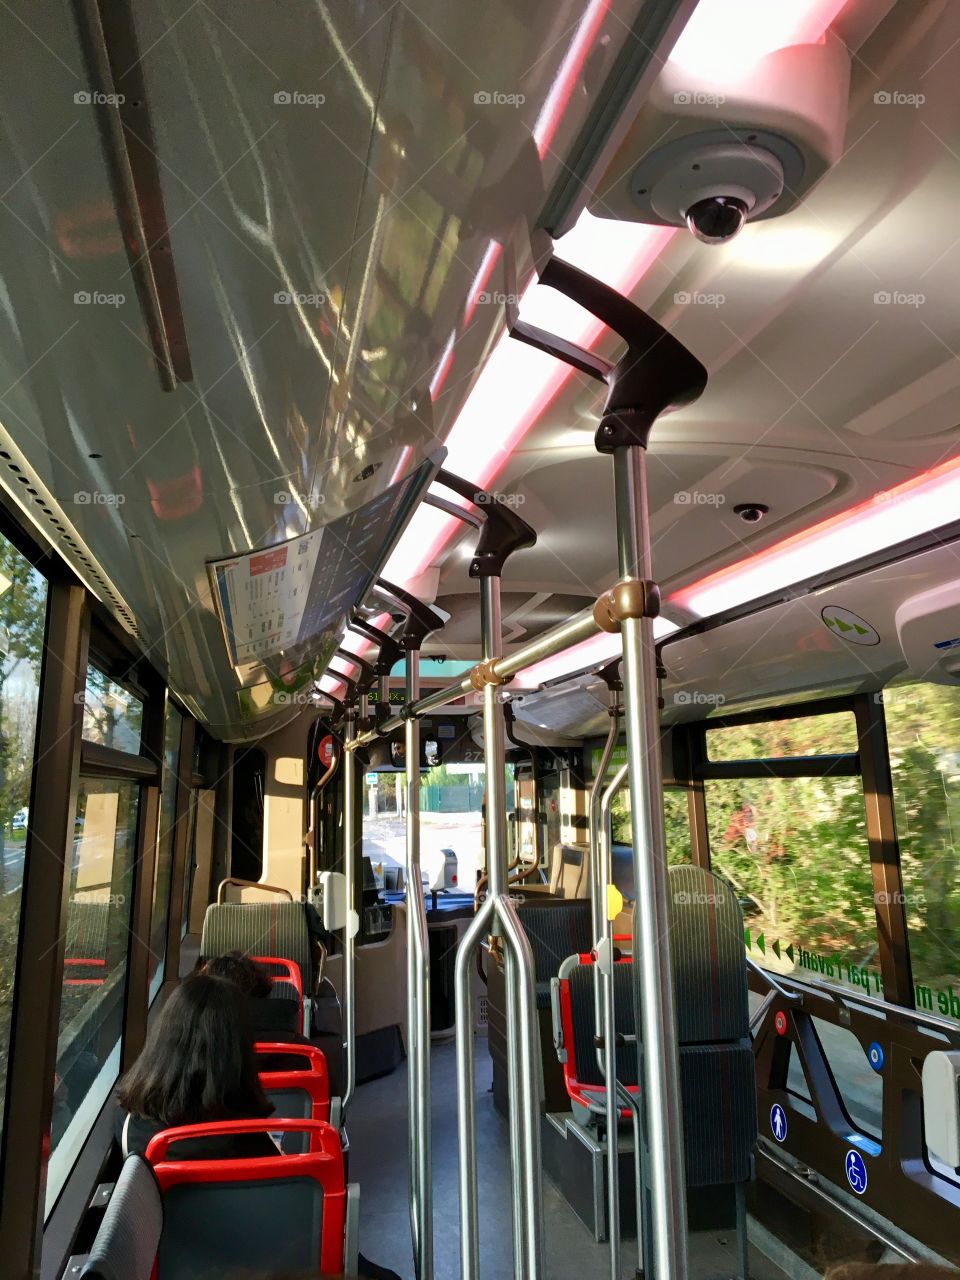 Daily bus trip, Lyon, France 